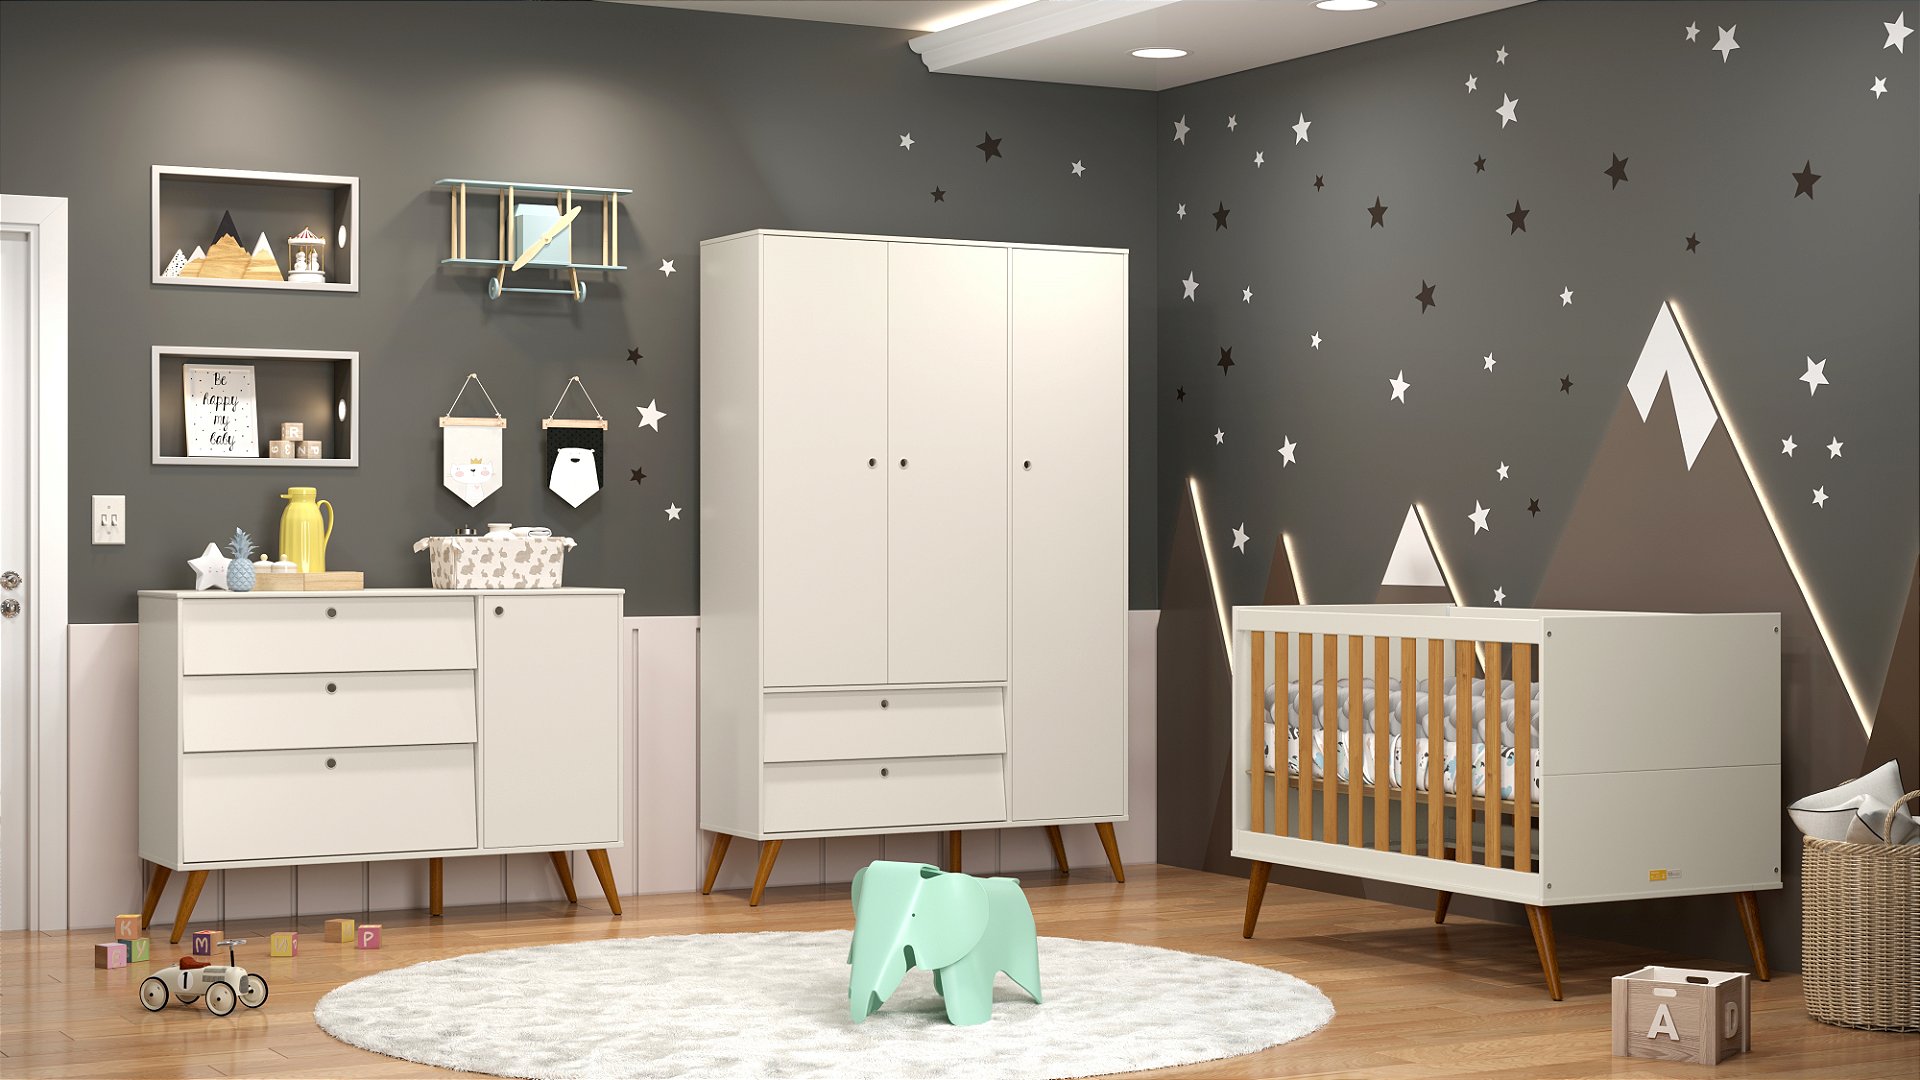 Papel de Parede Infantil Xadrez Aquarela Rosa - Provence Home & Baby -  Móveis, decoração, enxoval e utilidades.